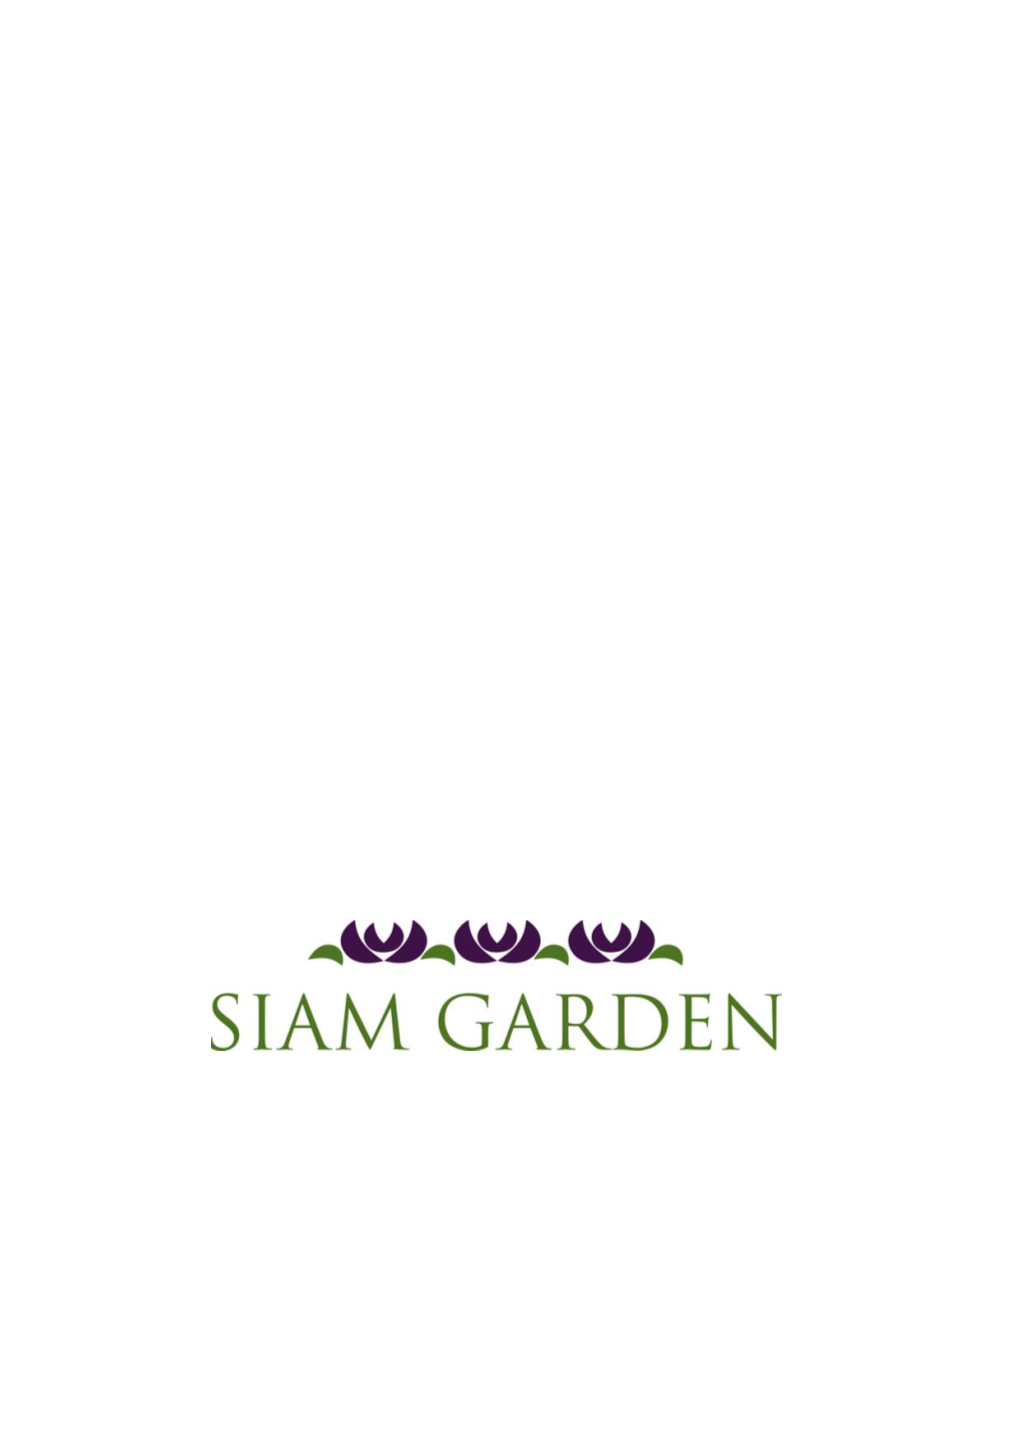 暹罗花园泰国餐厅 Siam Garden 菜单.Pdf